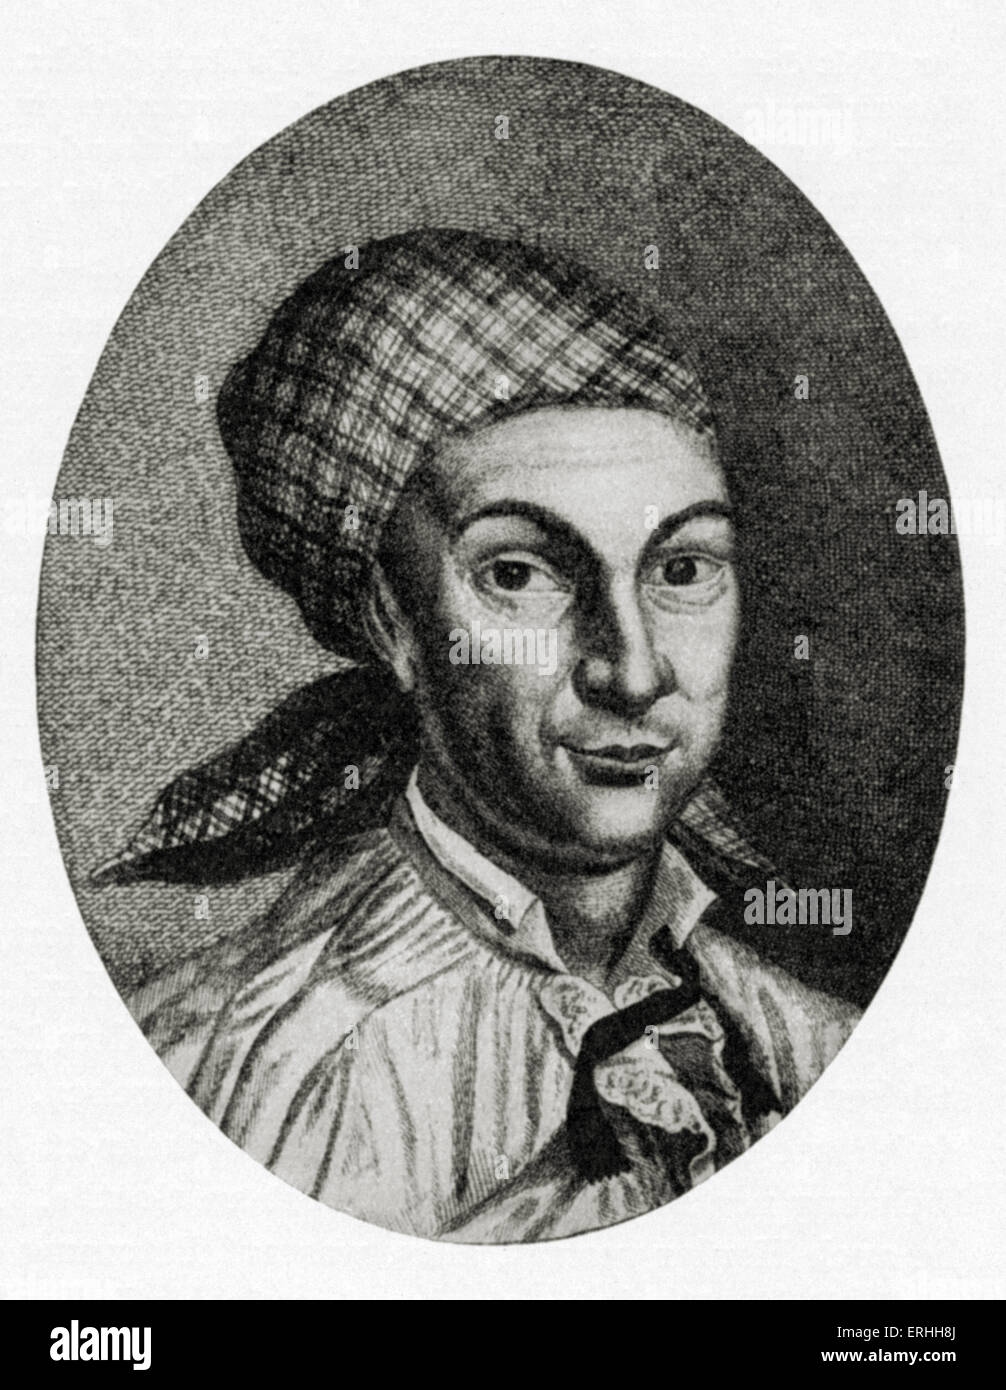 Johann Georg Hamann - portrait du philosophe allemand, le 27 août 1730 - 21 juin 1788. Banque D'Images